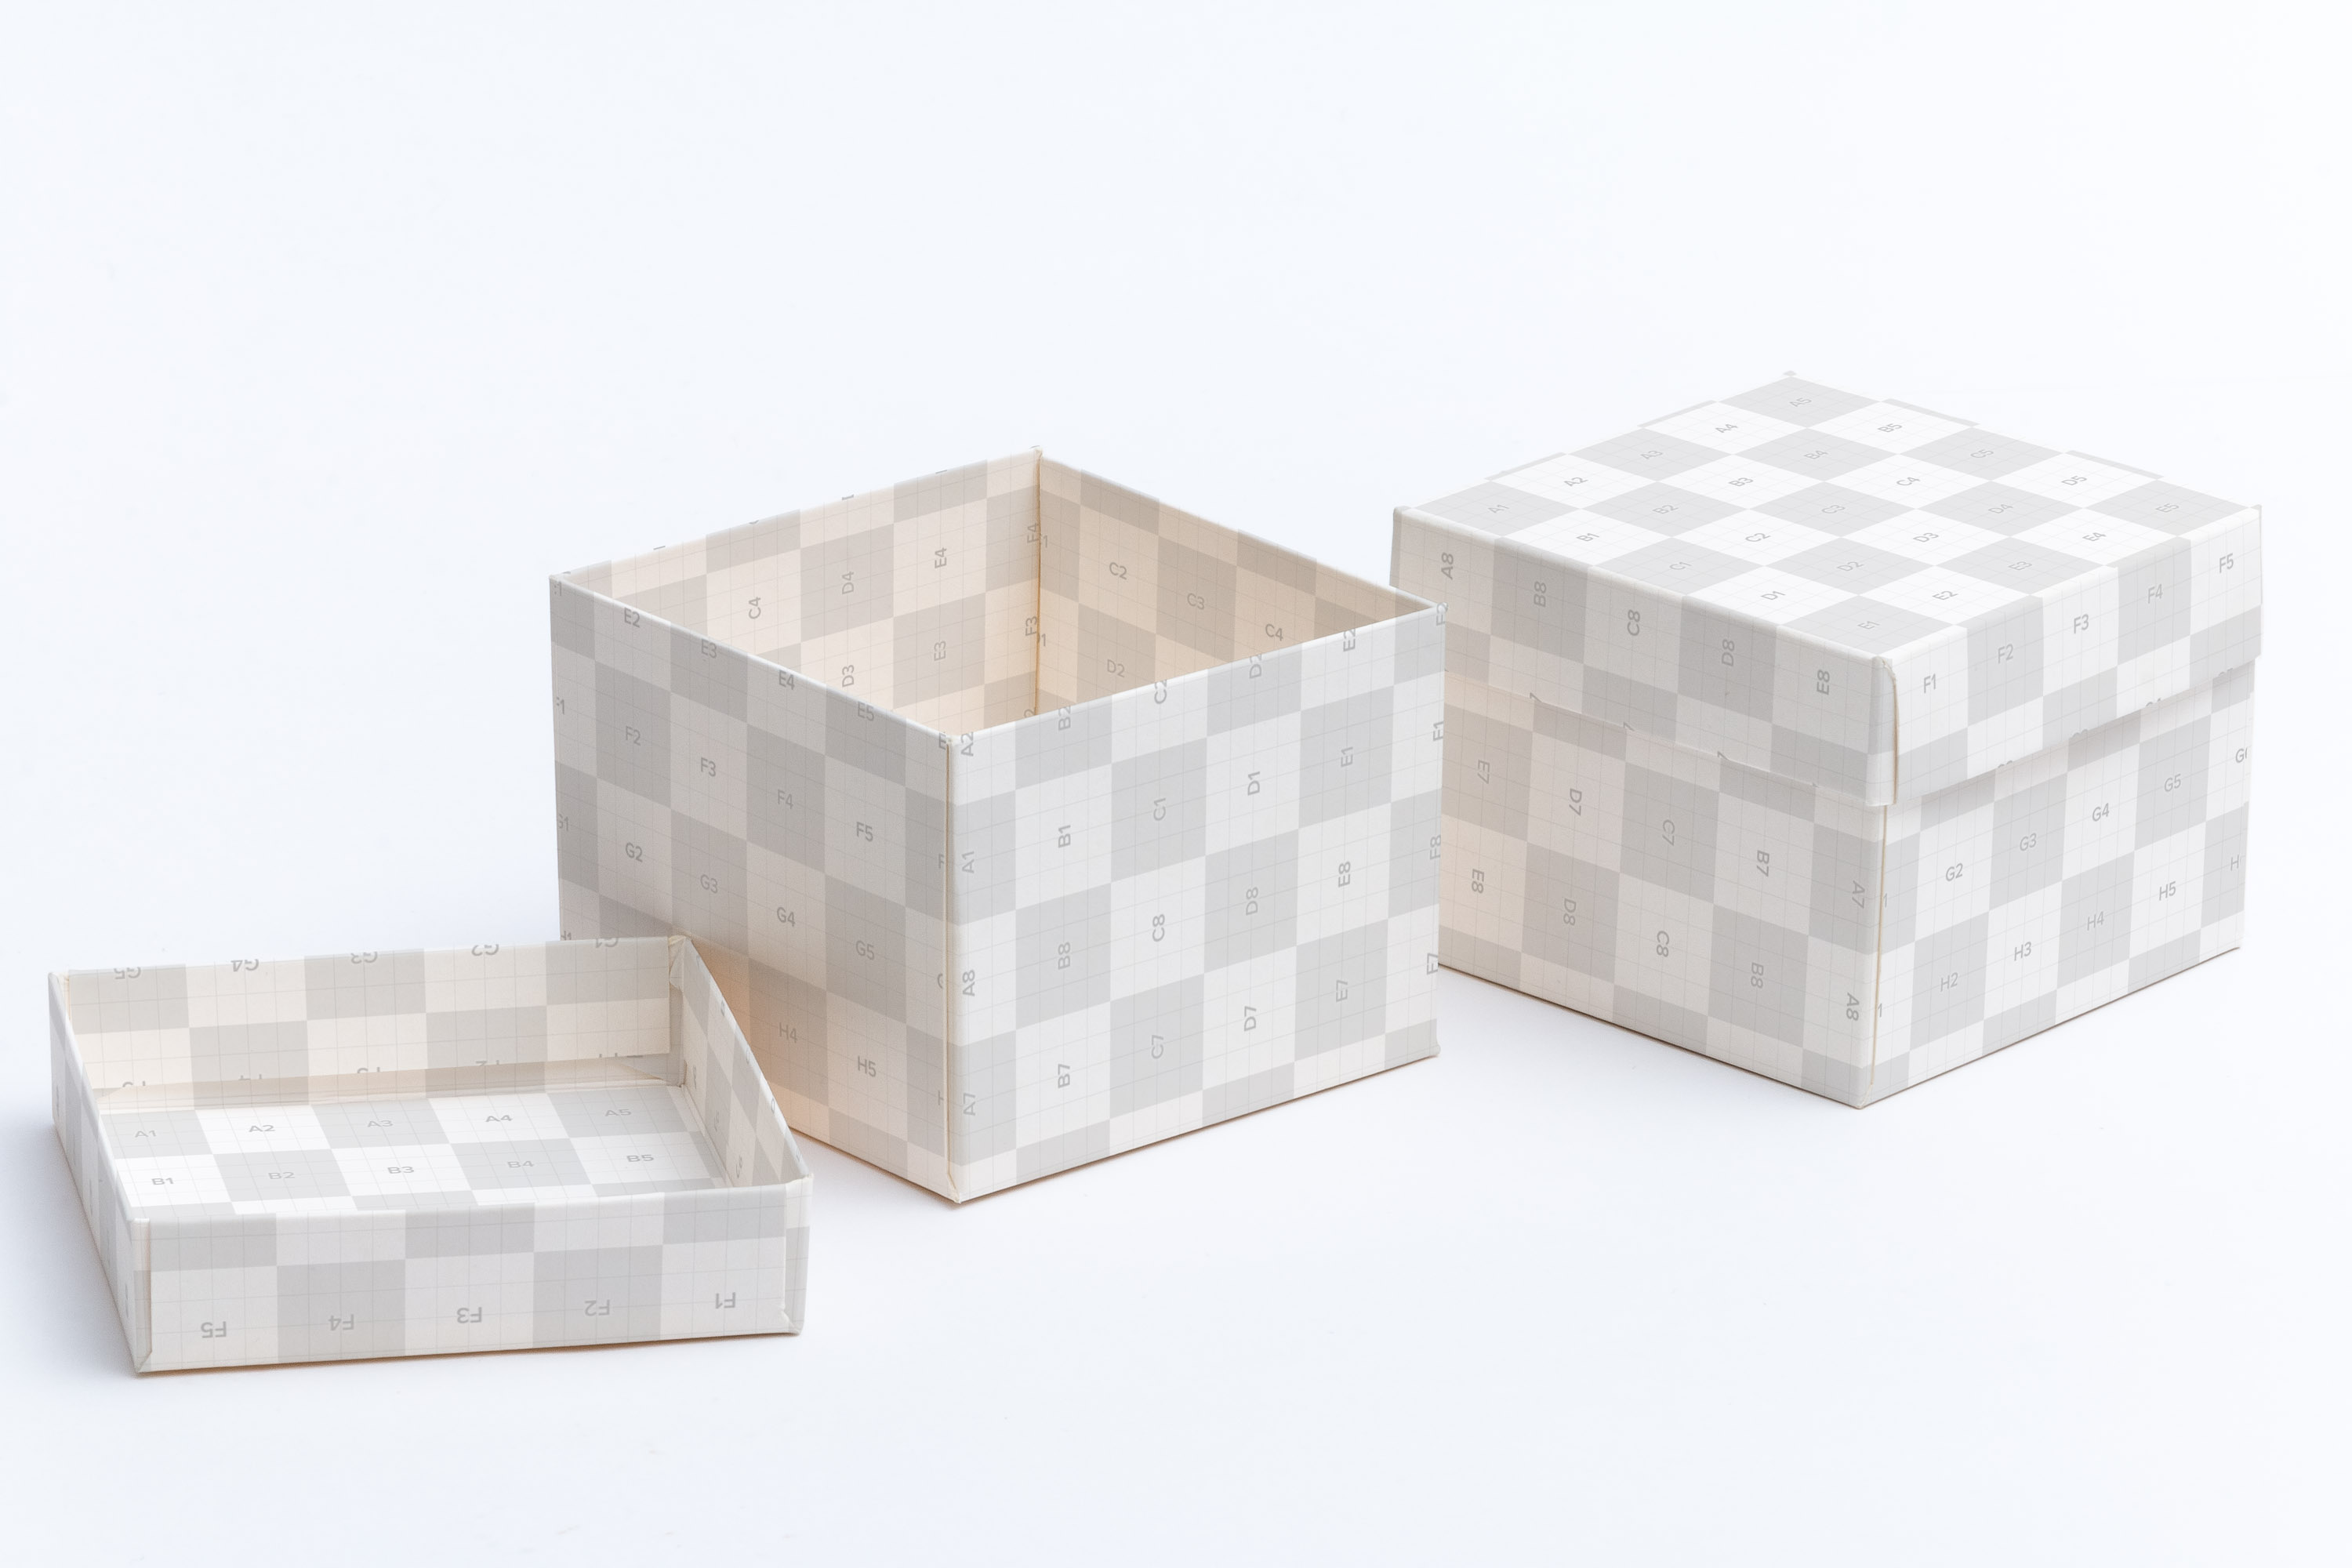 立方体礼品盒包装设计样机模板02 Cube Gift Box Mockup 02插图(2)